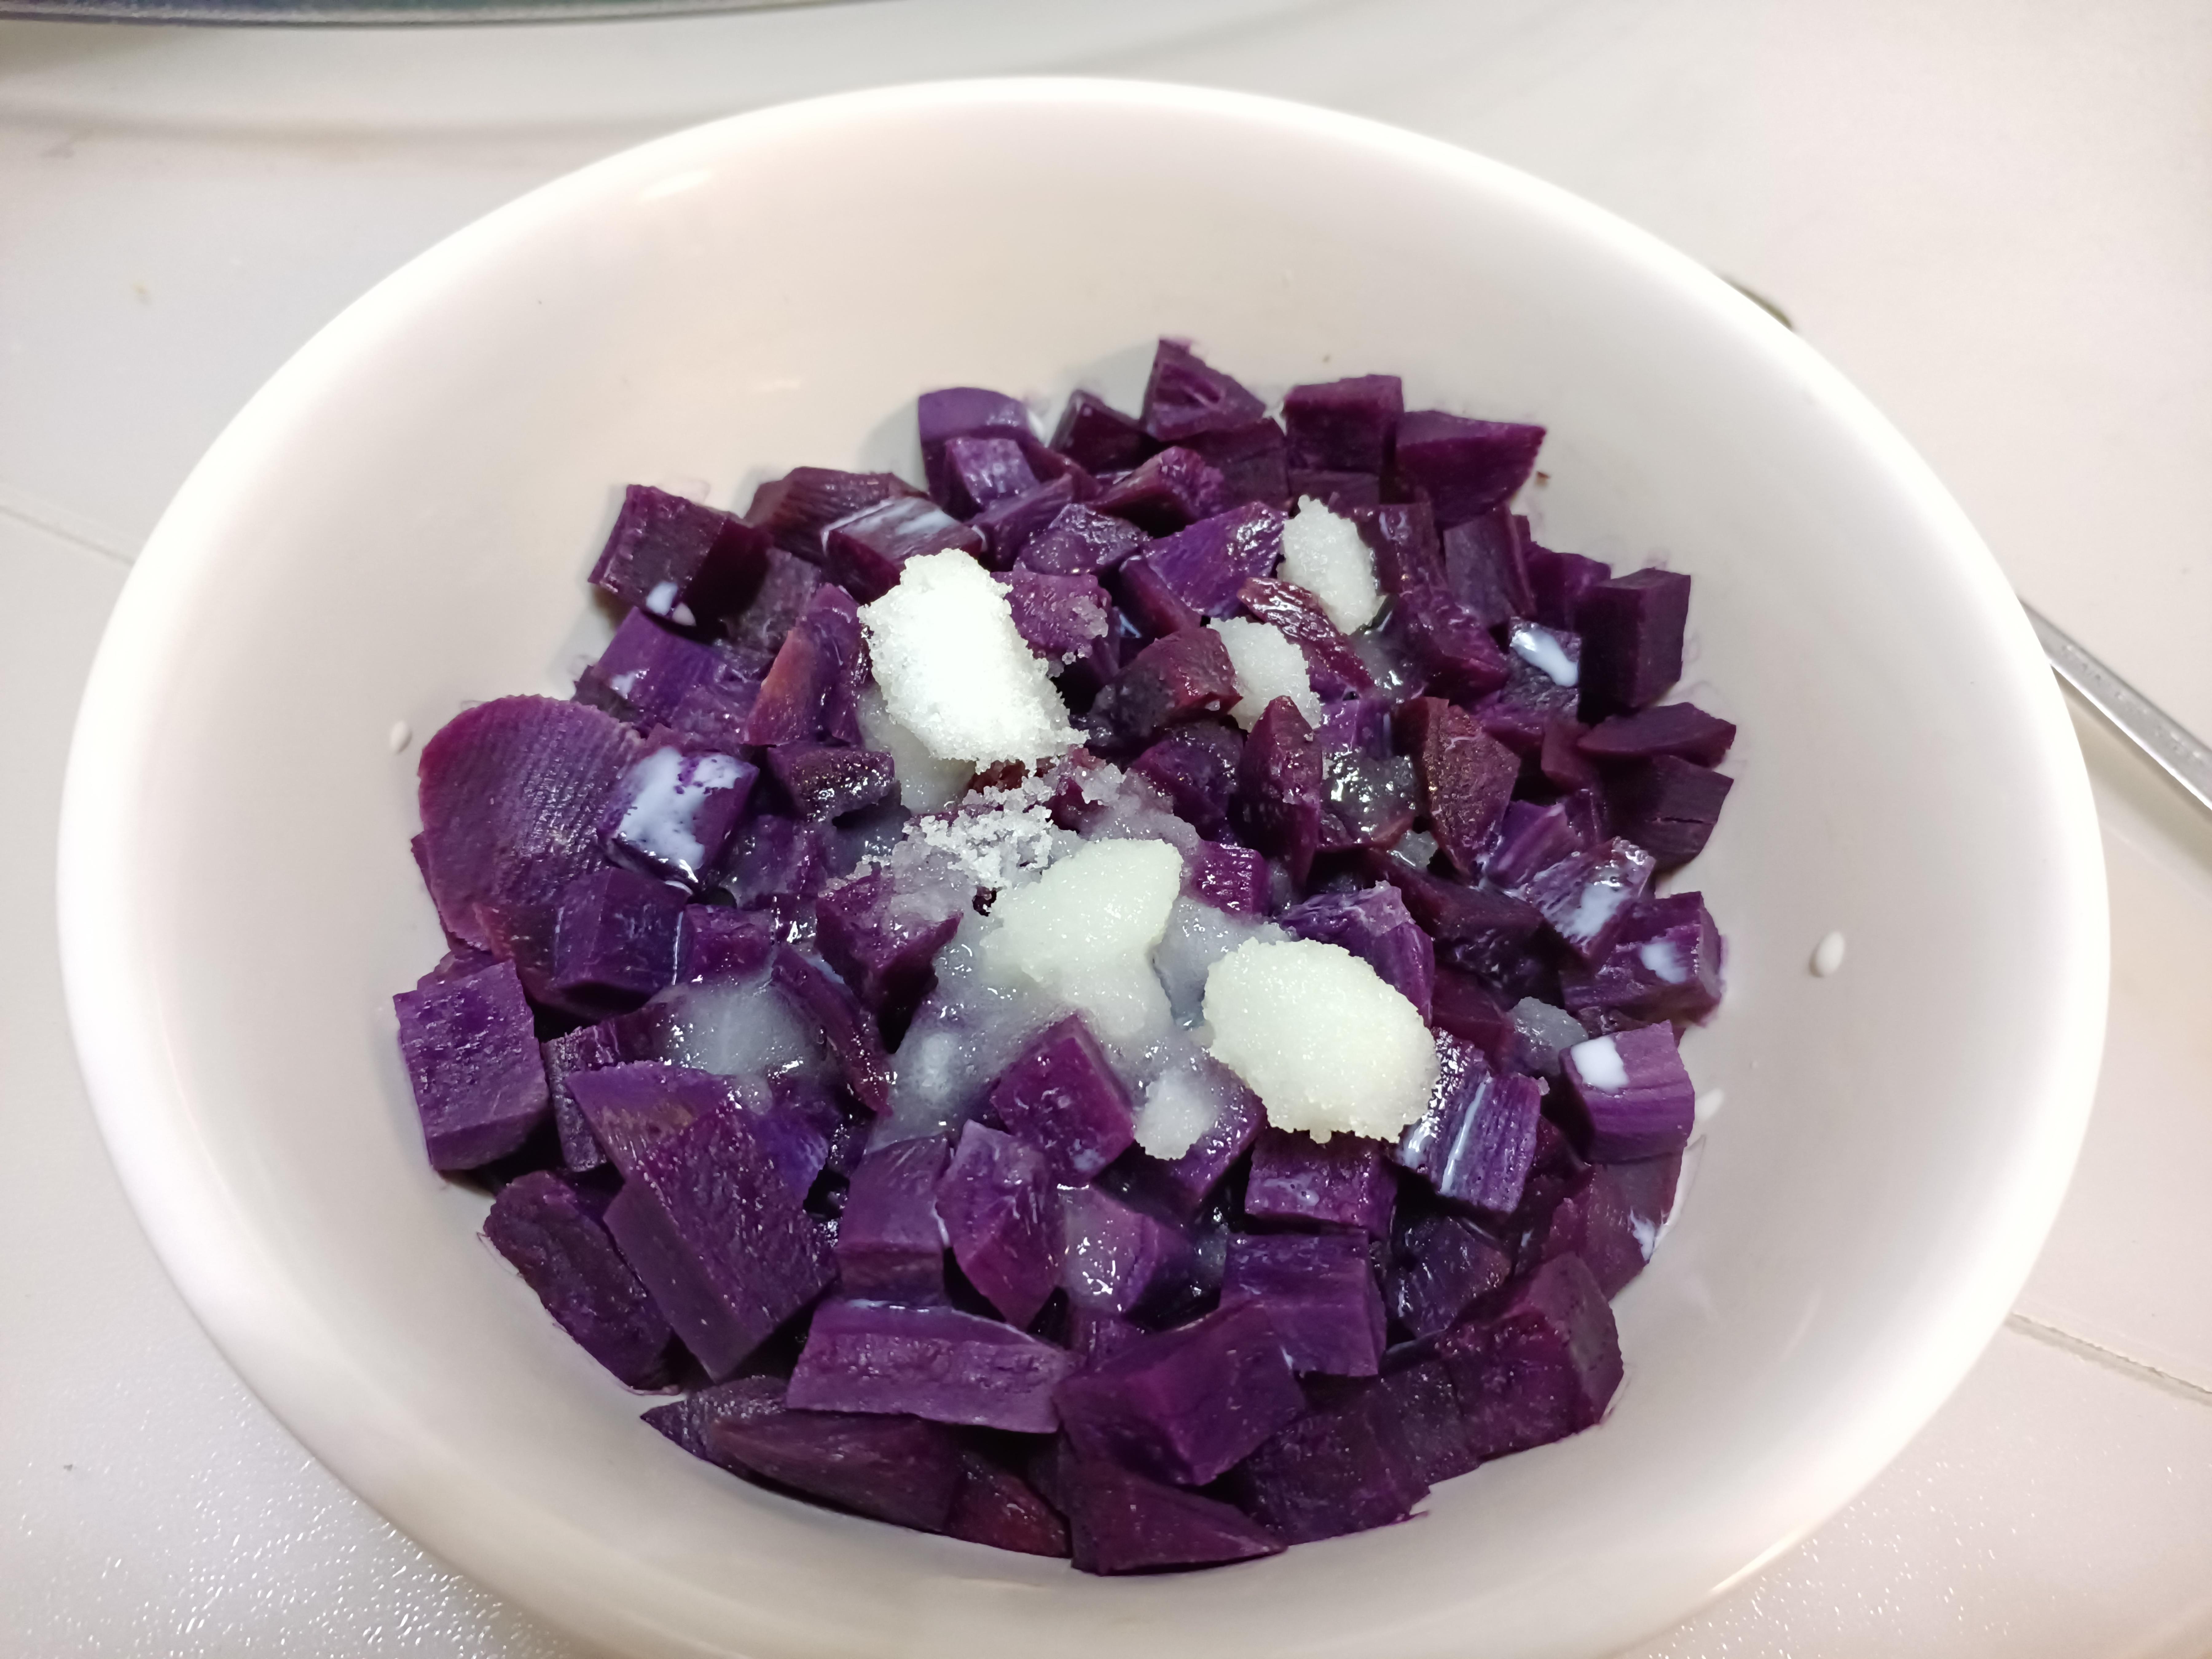 【小飯盒】今日菜譜一紫薯芝士餅